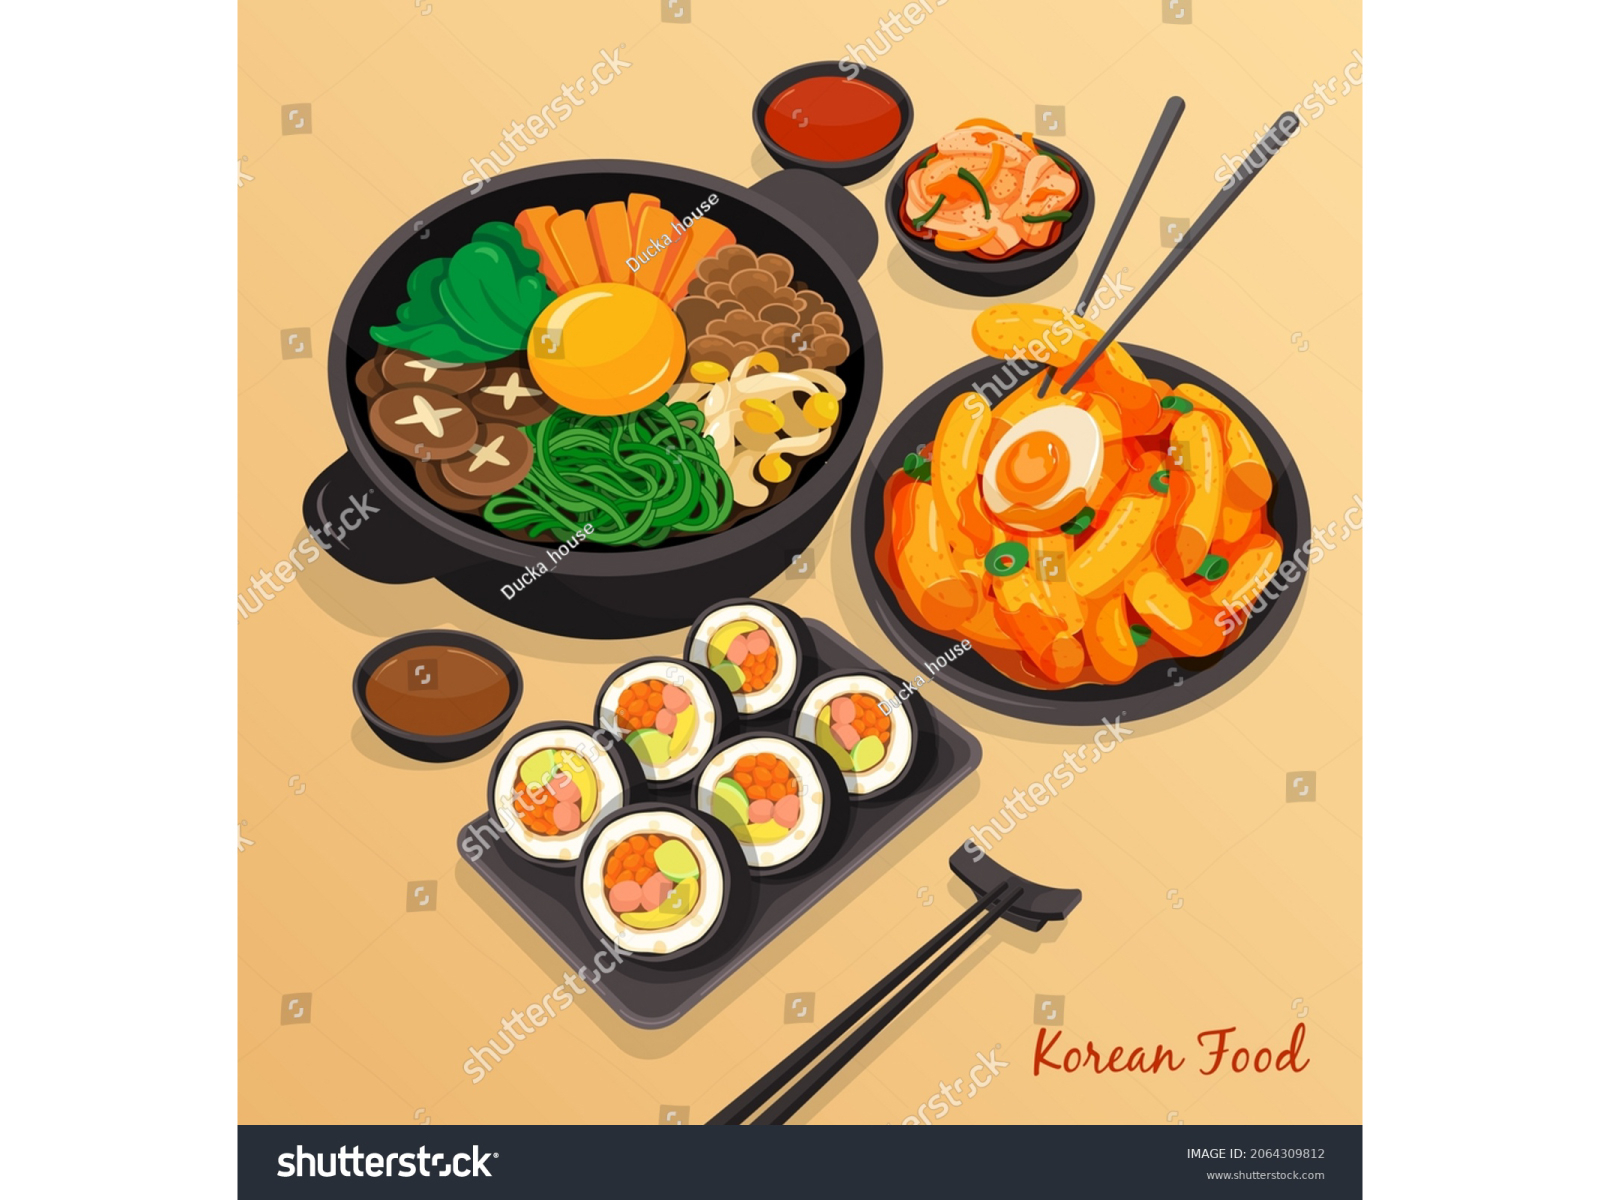 Thực đơn đặc sản Hàn Quốc đầy mê hoặc trên nền nâu nhạt tươi mới. Với các món ăn đậm chất truyền thống, bạn sẽ được thưởng thức những món ăn ngon nức tiếng Hàn Quốc cùng không gian thanh lịch sang trọng. 